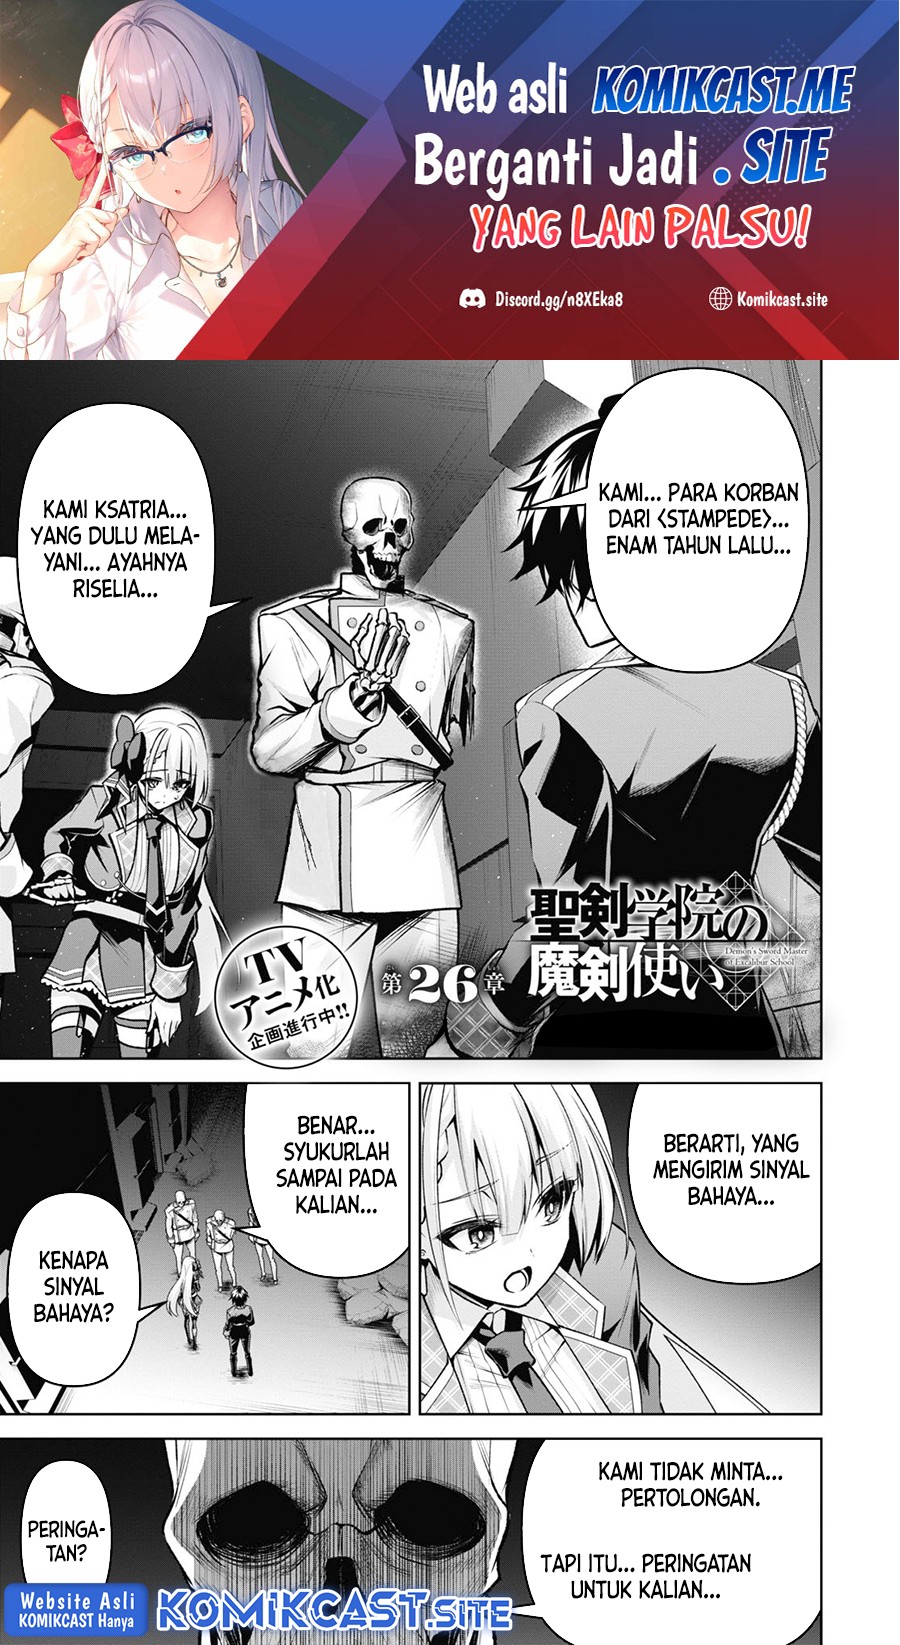 Demon’s Sword Master of Excalibur School Chapter 26 Bahasa Indonesia